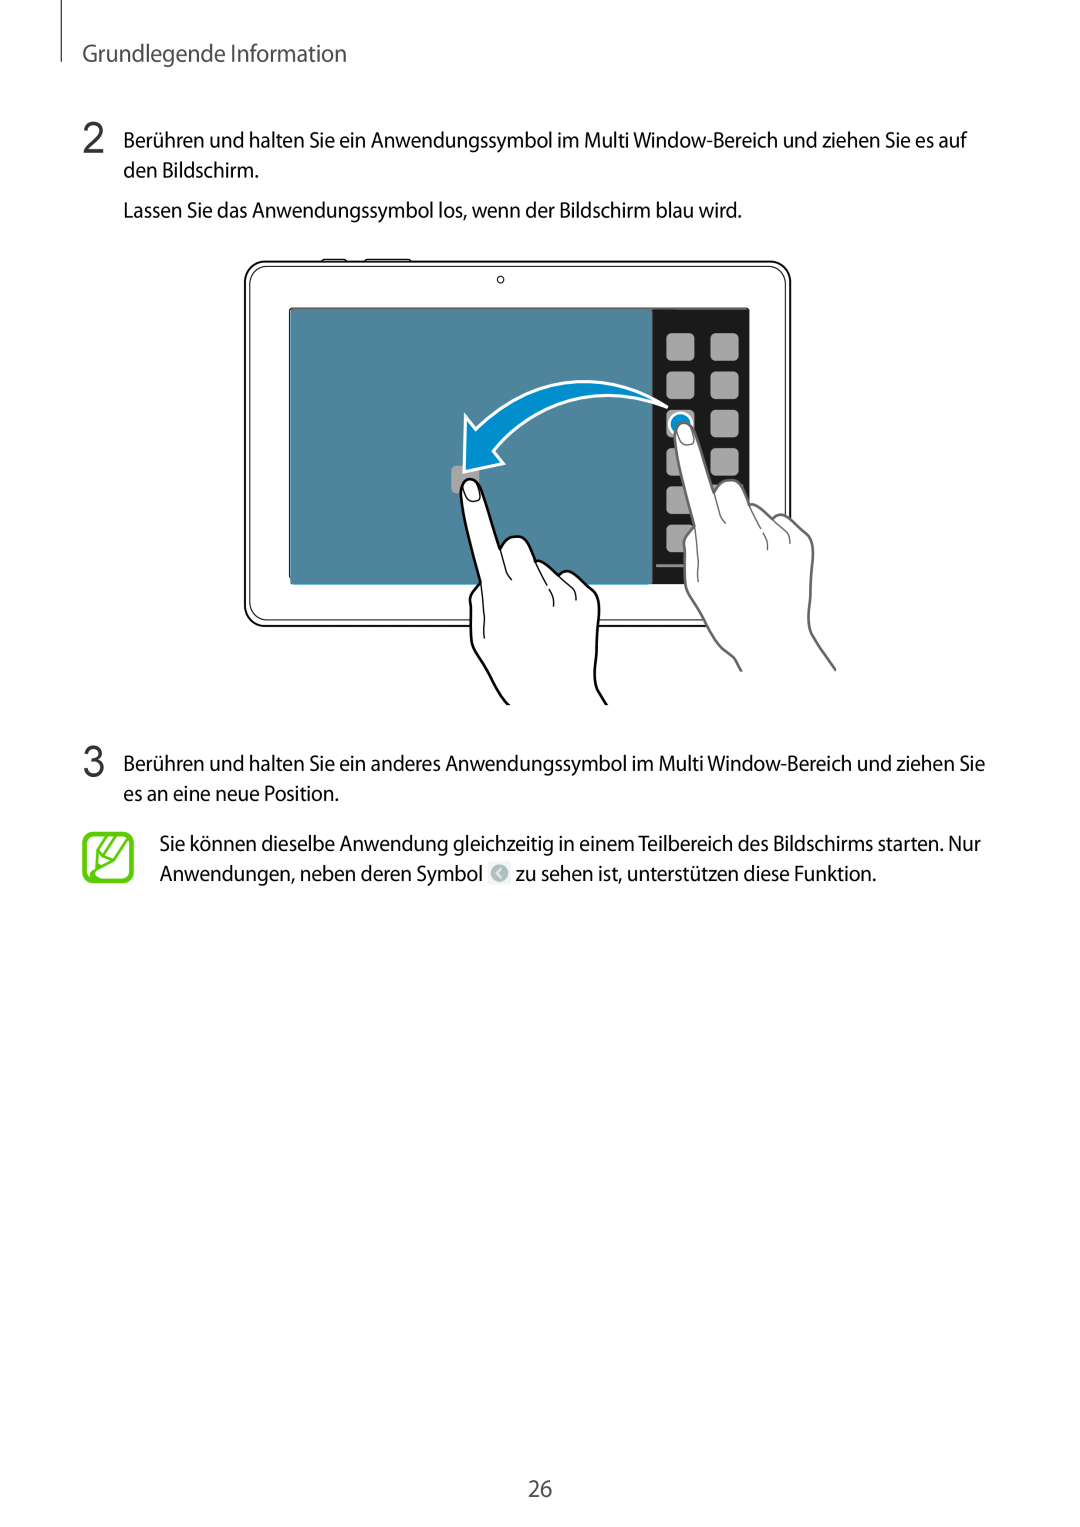 Samsung SM-P9000ZWAATO manual Grundlegende Information, Lassen Sie das Anwendungssymbol los, wenn der Bildschirm blau wird 